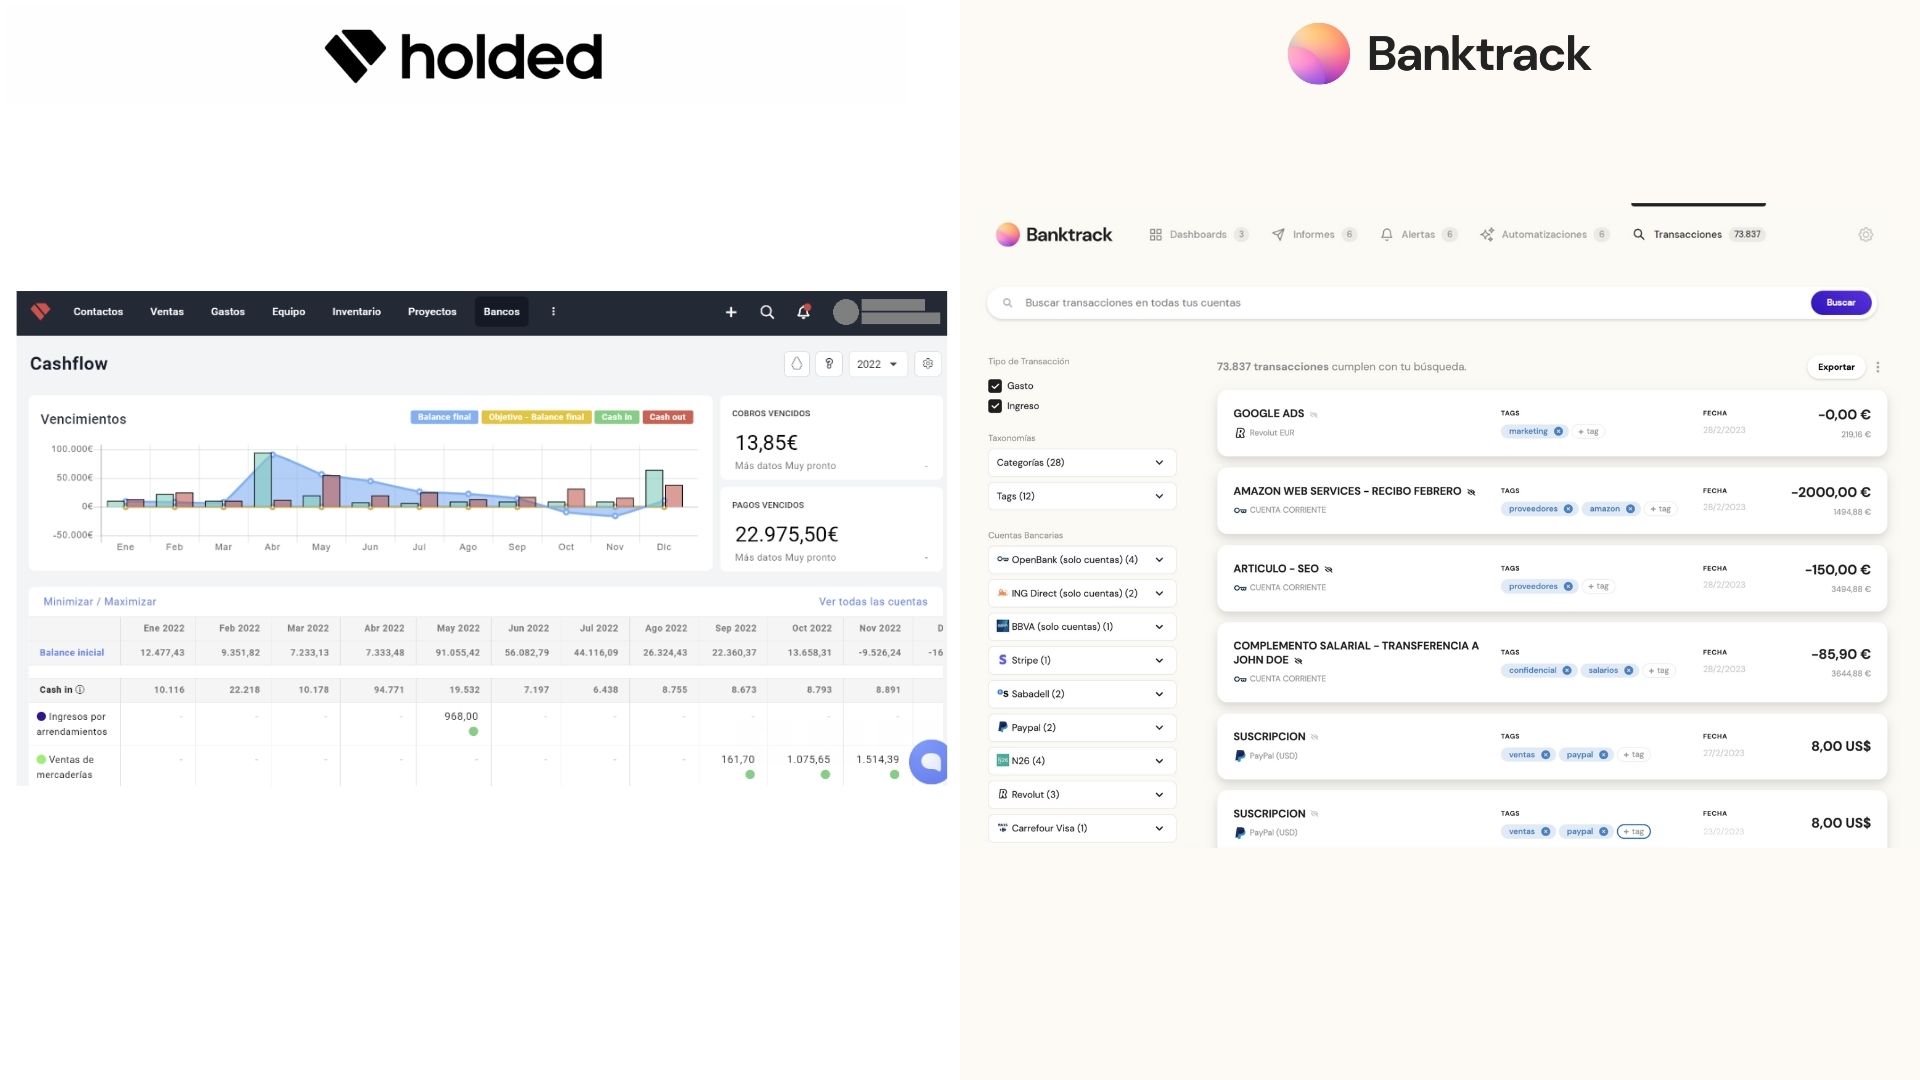 A la derecha existe el modelo de buscador de Banktrack, mientras que a la izquierda el modelo de holded es este apartado el que más tiene similitud